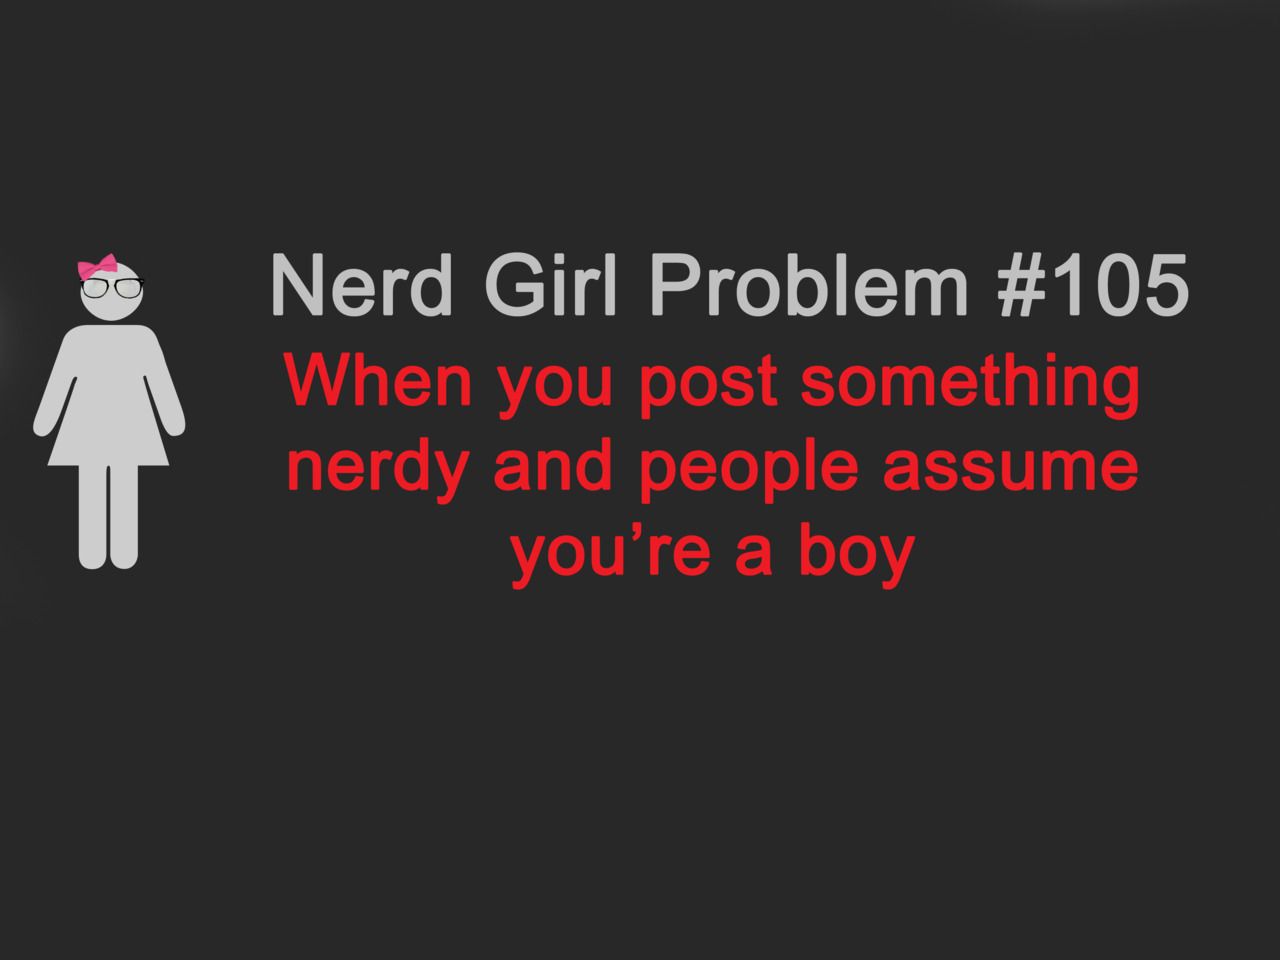 Nerd girls problems.